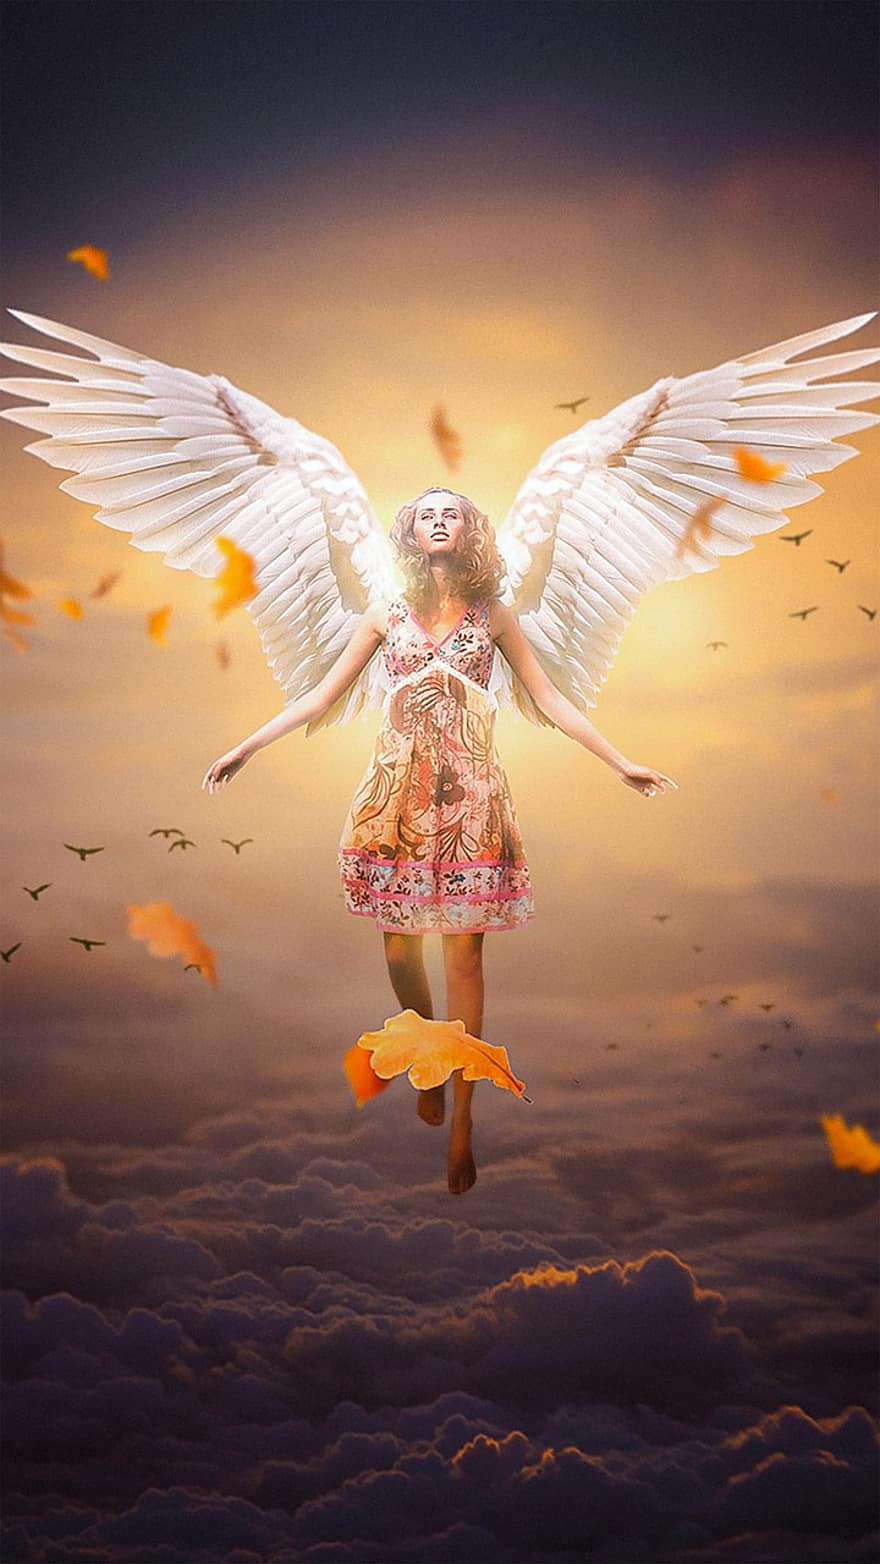 eņģelis, sieviete, spārni, eņģeļu spārni, fantāzija, sieviešu eņģelis, sapnis, debesis, meitene, fotomontāža, foto manipulācijas